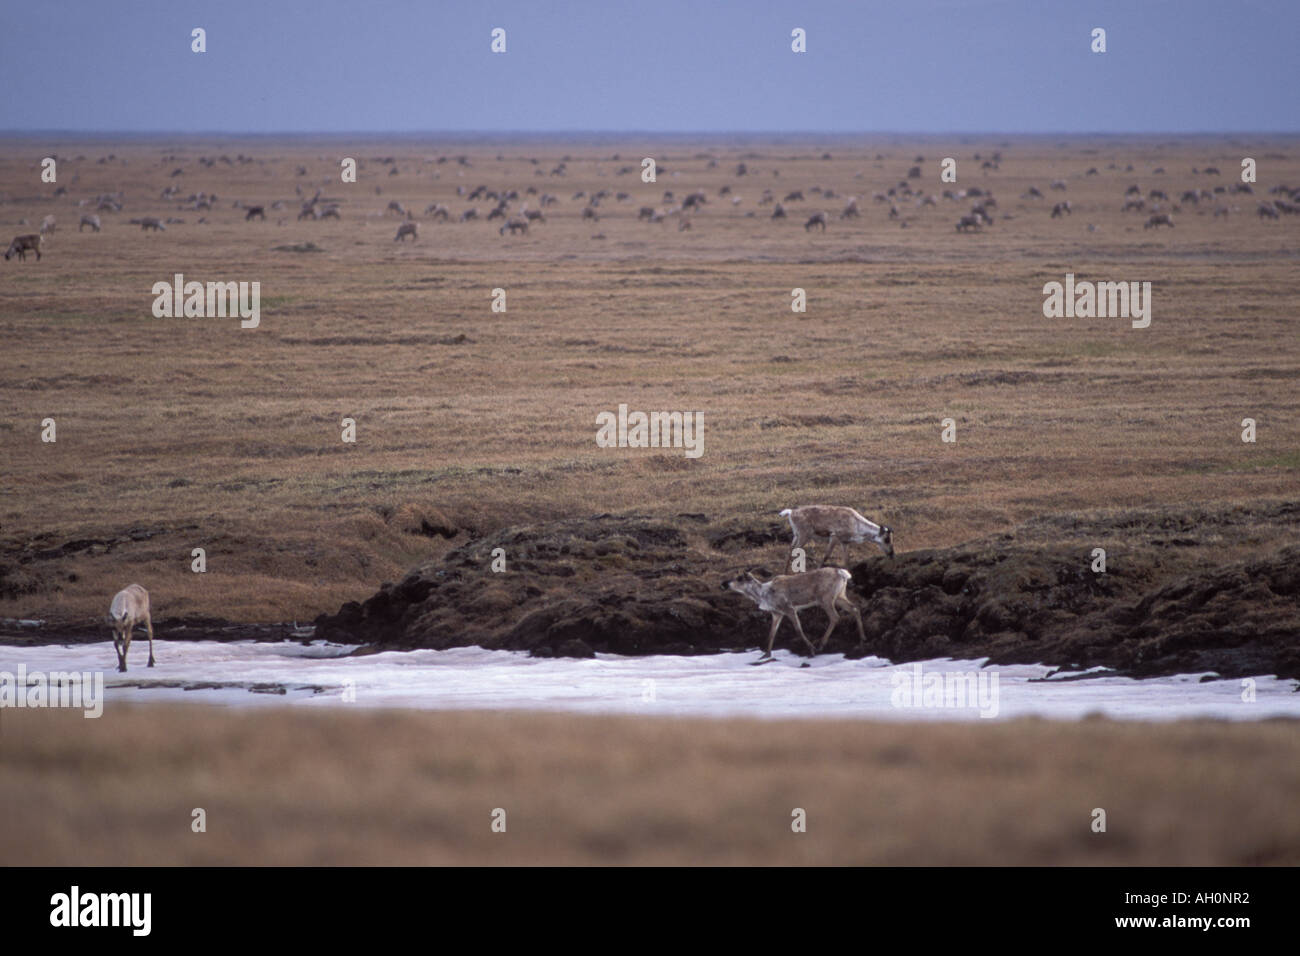 Le caribou de la toundra Rangifer tarandus Porcupine de la plaine côtière de l'alimentation 1002 Arctic National Wildlife Refuge en Alaska Banque D'Images